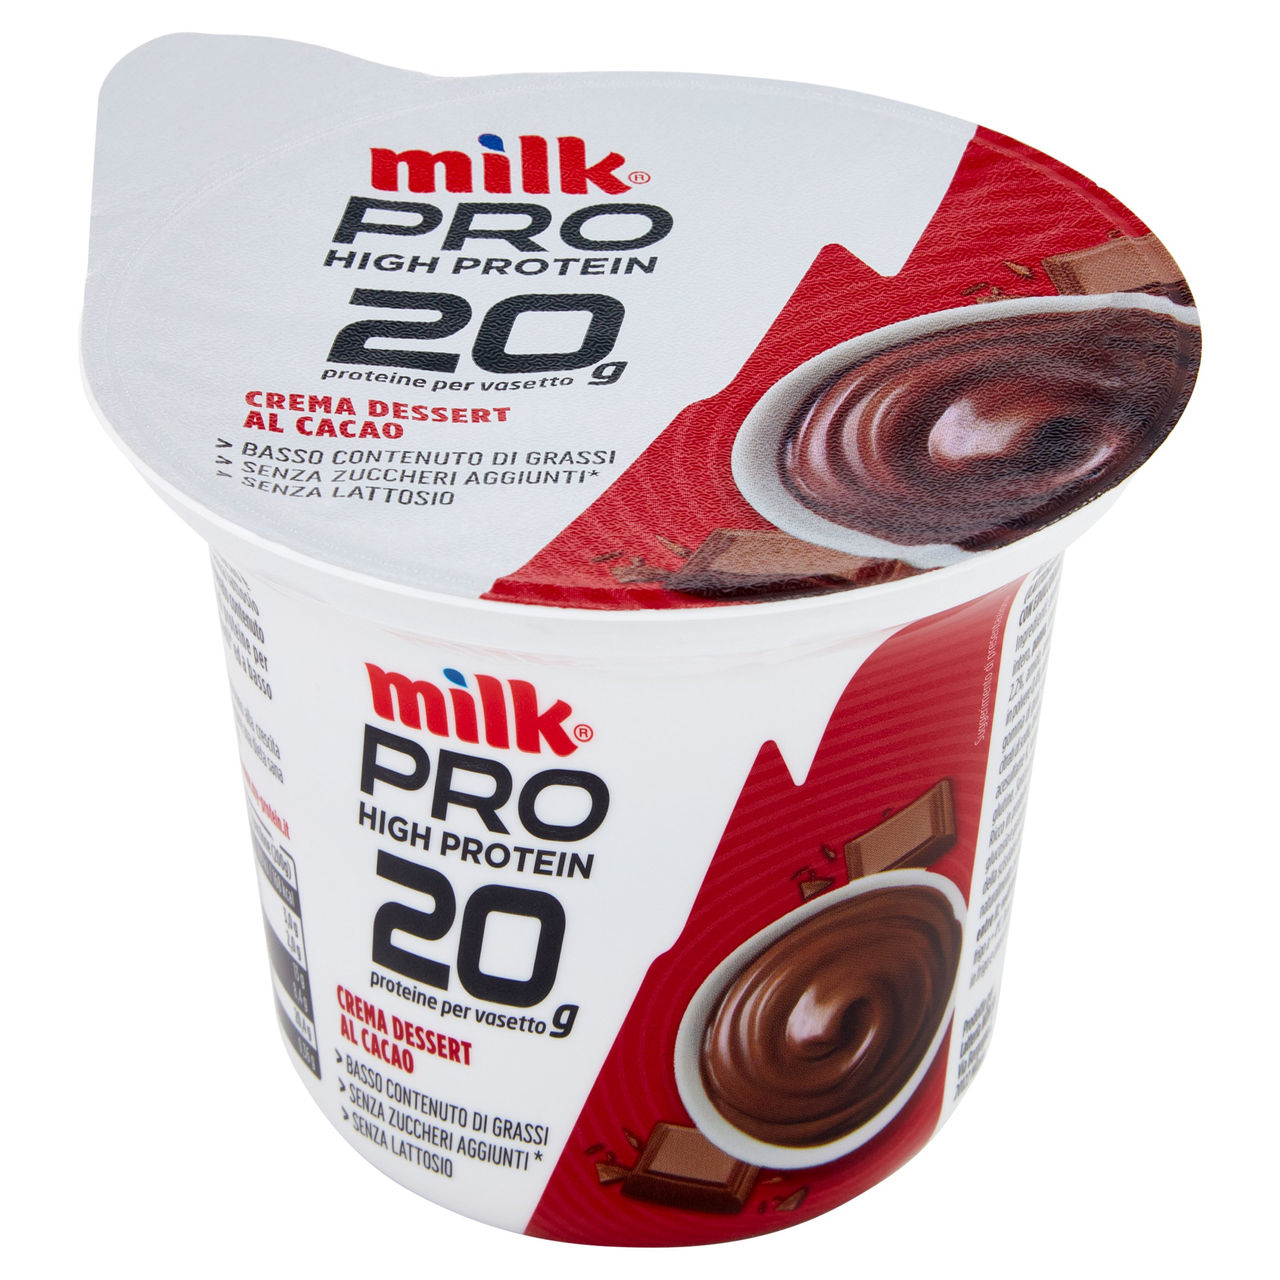 Milk Pro High Protein 20g Crema Dessert Cacao 200 g